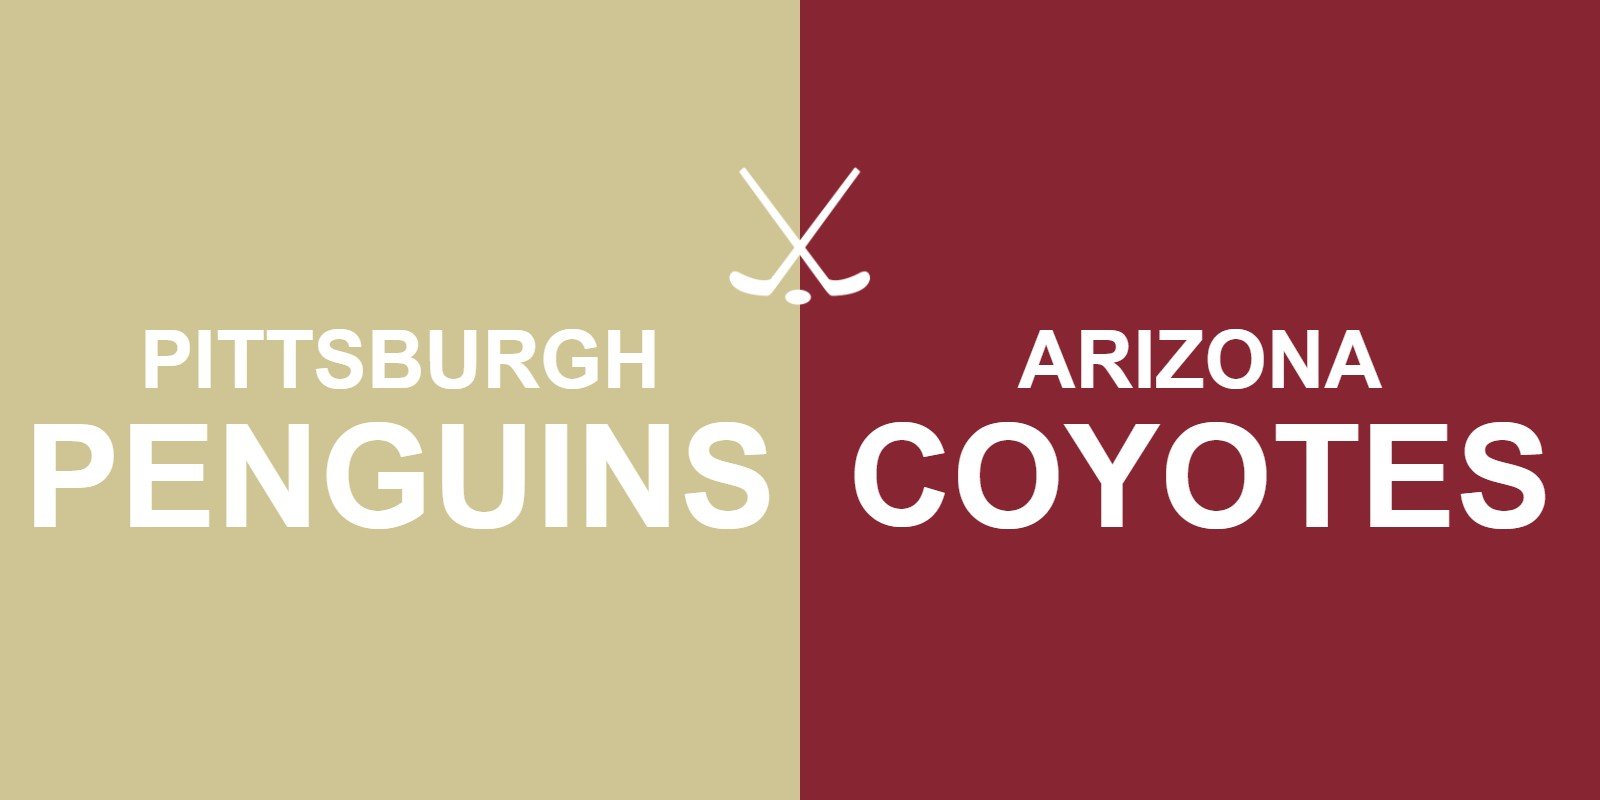 Penguins vs Coyotes